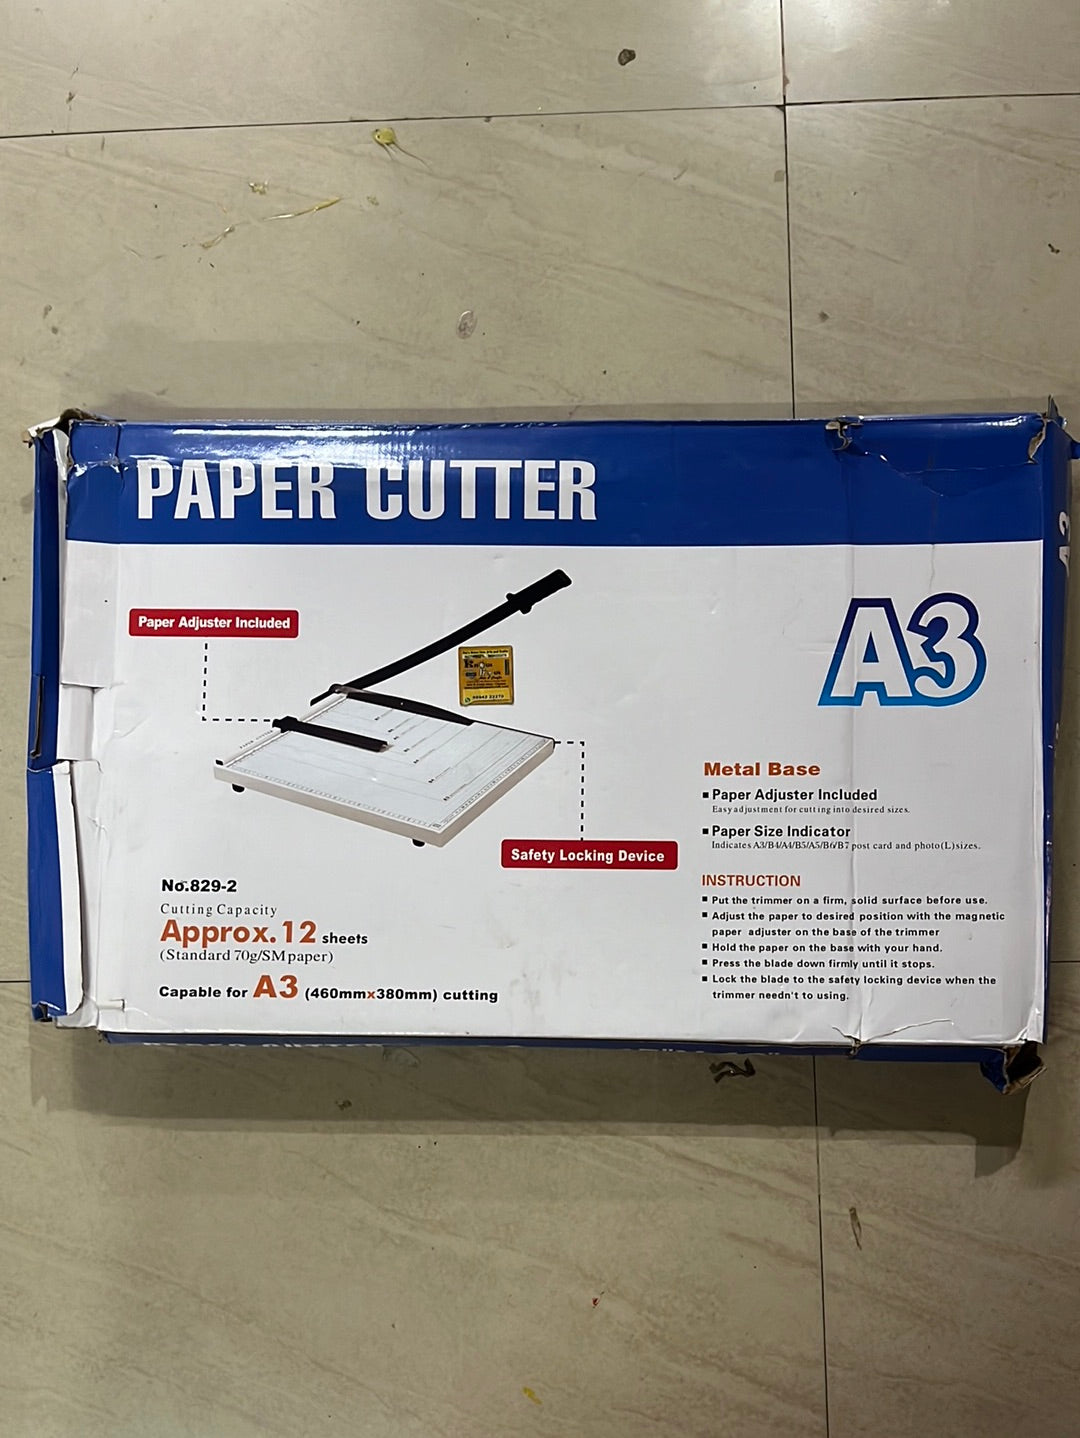 Paper cutter A3 (460mm x 380mm) cutting